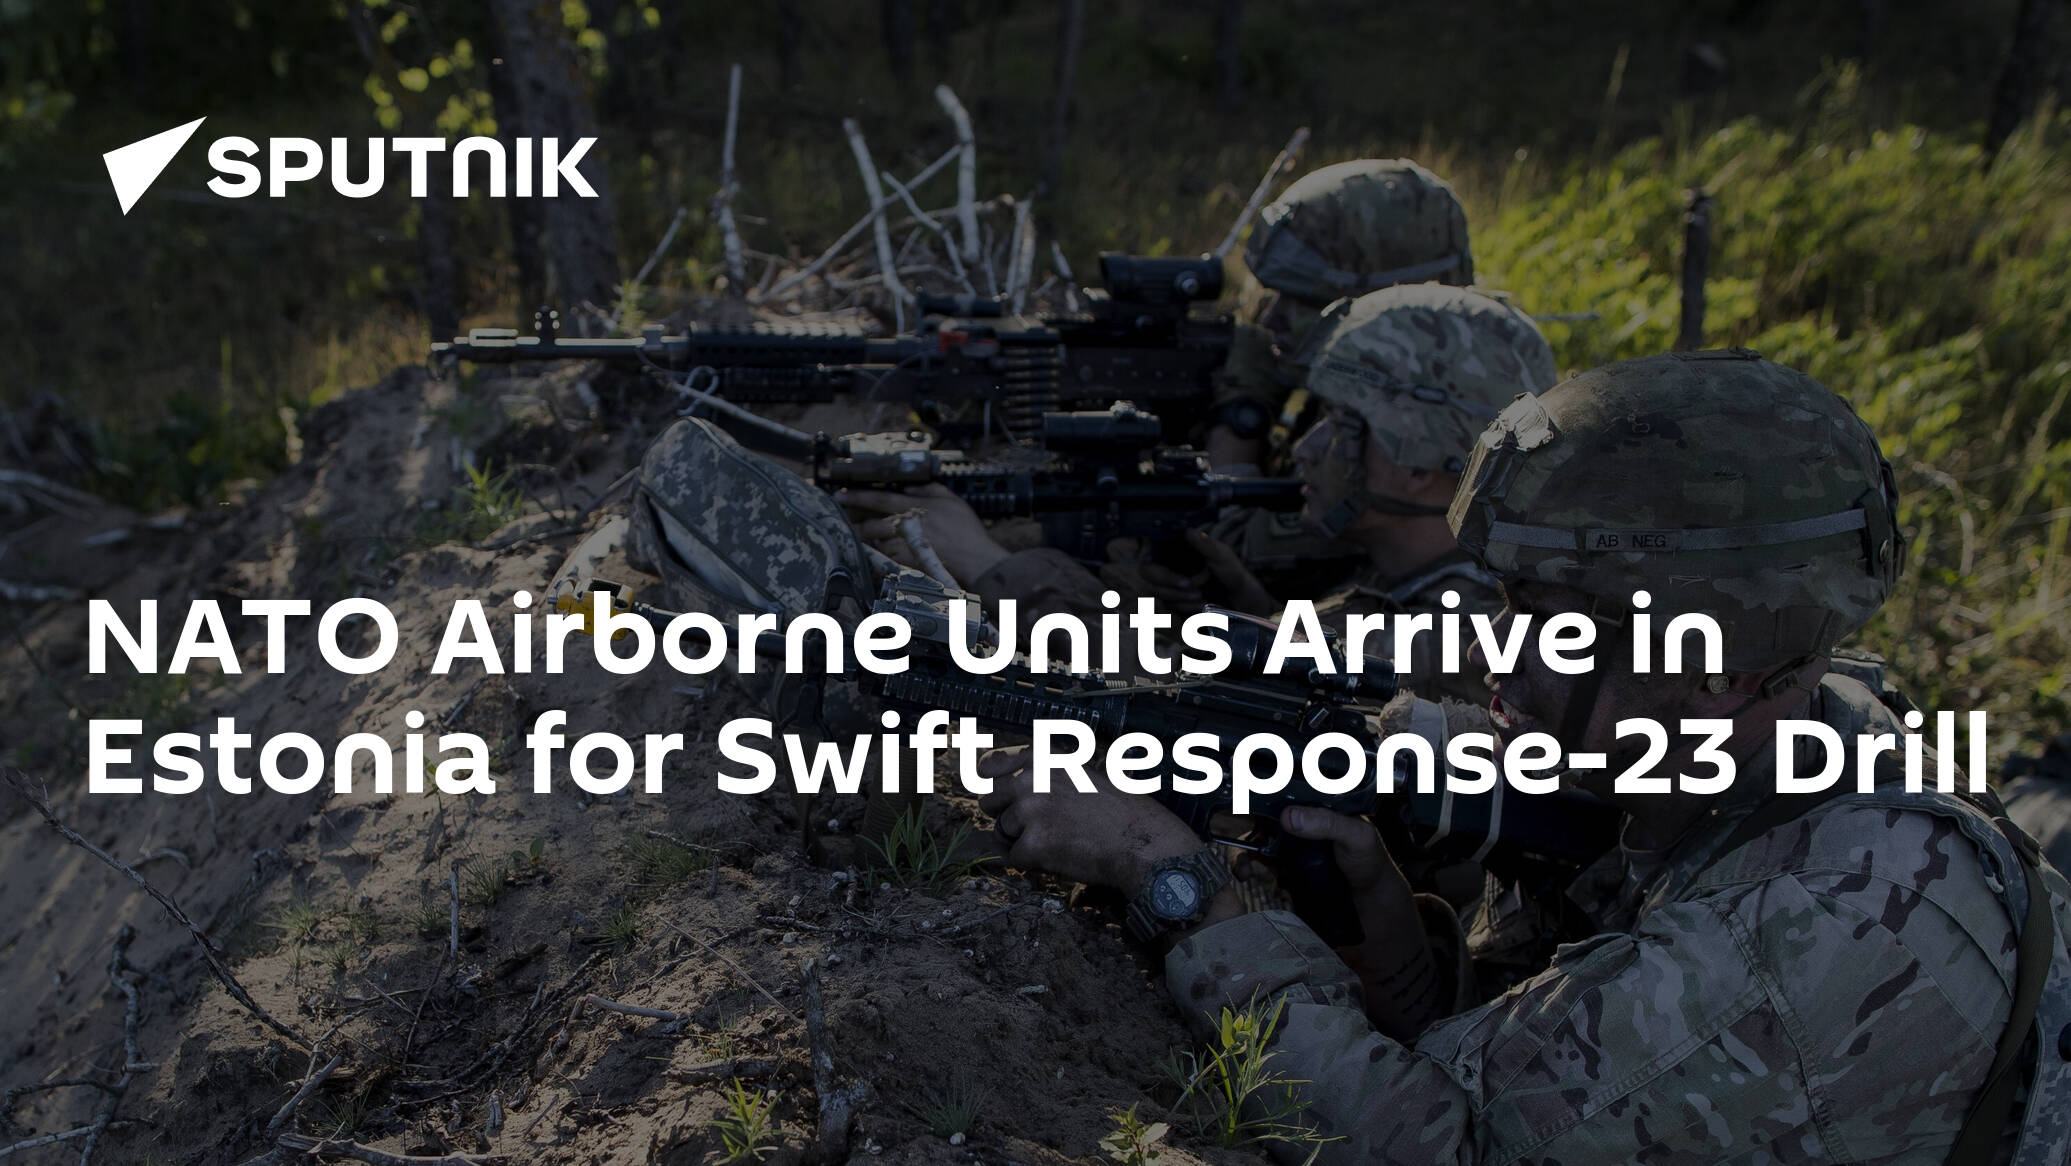 NATO Airborne Units Arrive in Estonia for Swift Response-23 Drill